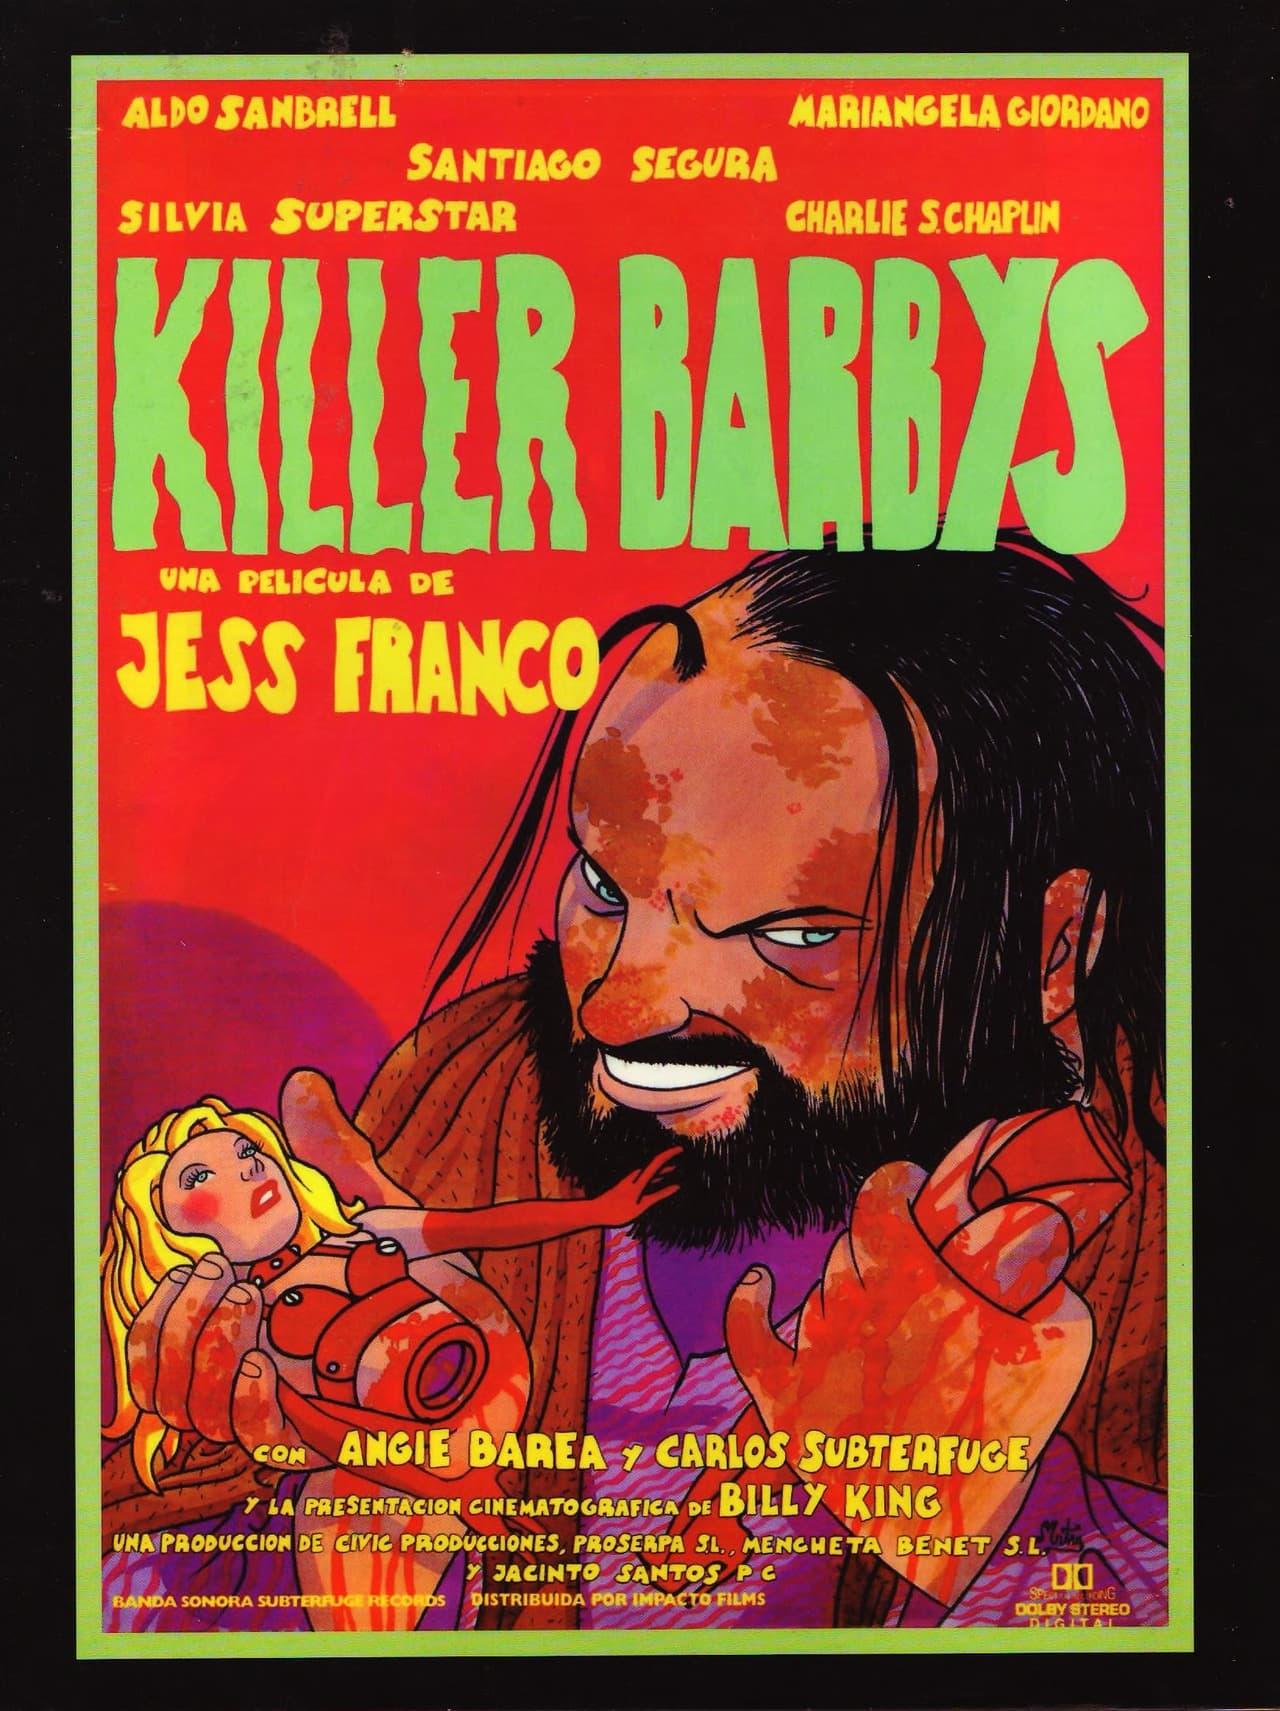 Killer Barbys poster